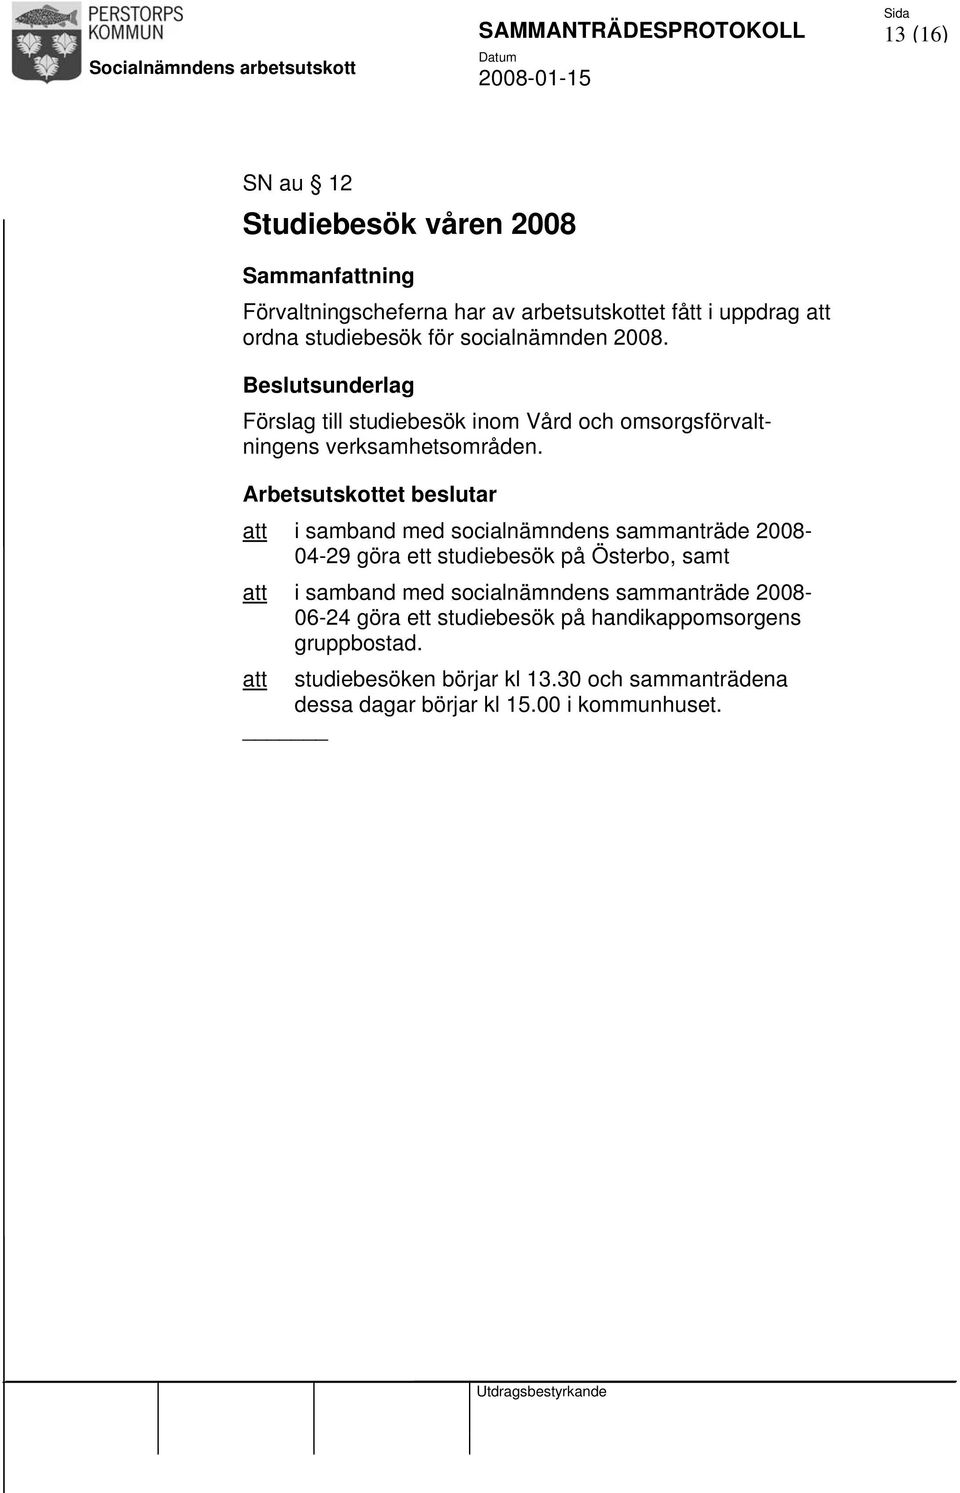 Arbetsutskottet beslutar att i samband med socialnämndens sammanträde 2008-04-29 göra ett studiebesök på Österbo, samt att i samband med